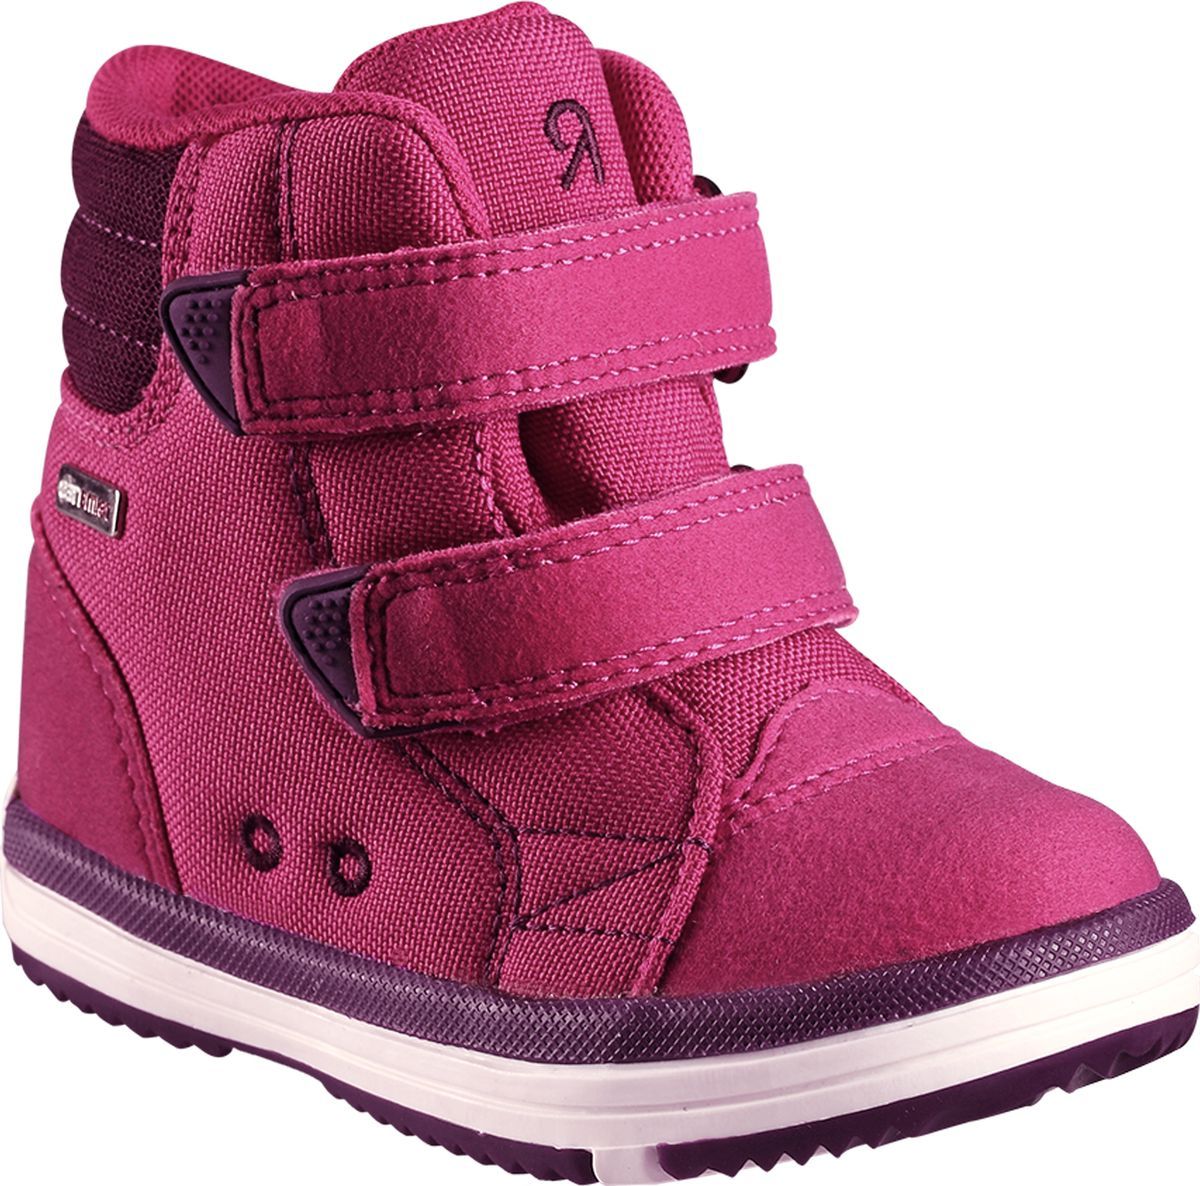 Ботинки детские Reima Patter, цвет: розовый. 5693443600. Размер 31